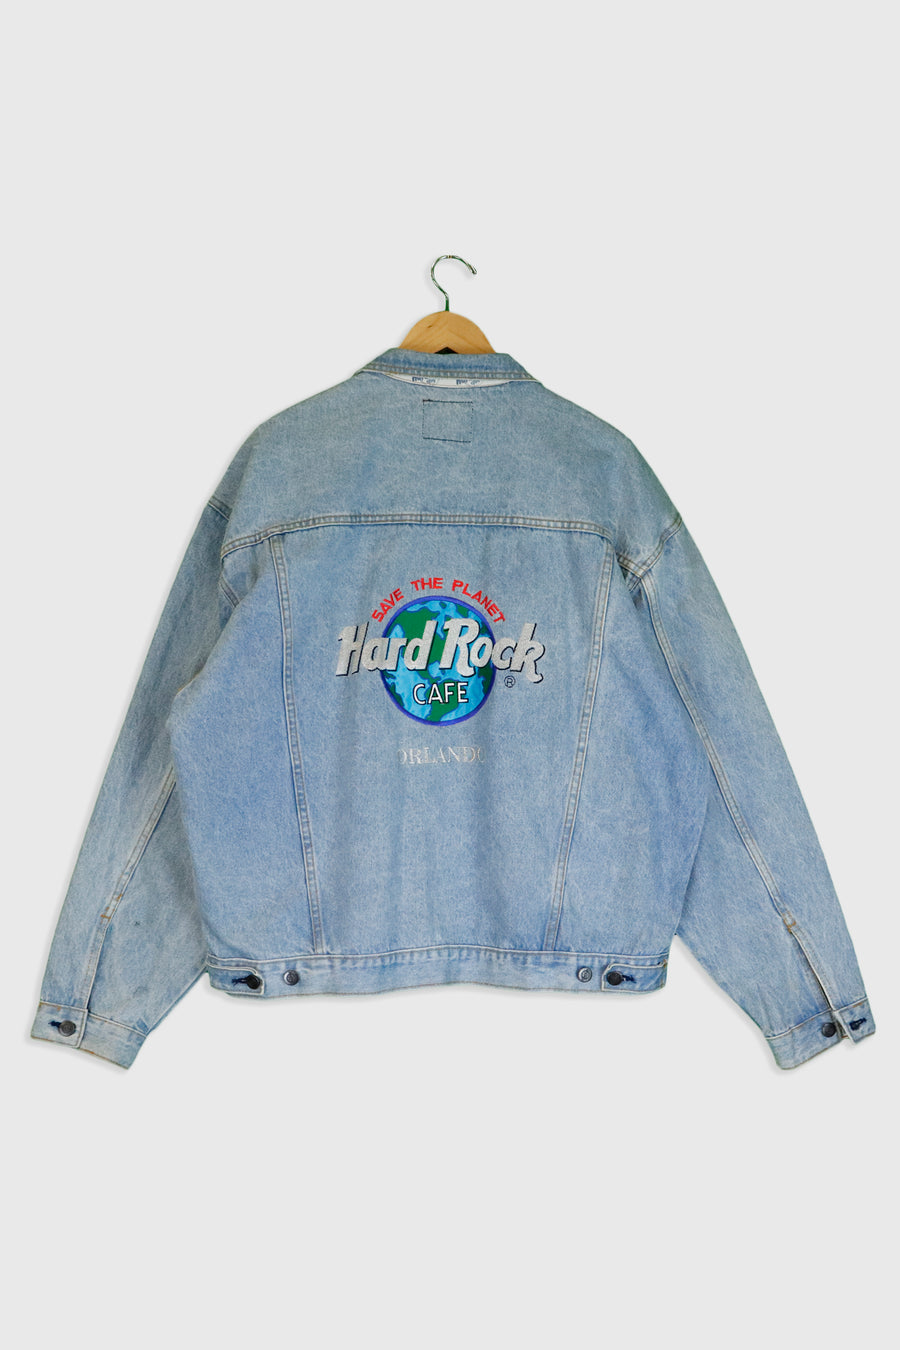 Vintage Hard Rock Cafe Embroidered Orlando Denim Jacket Sz XL